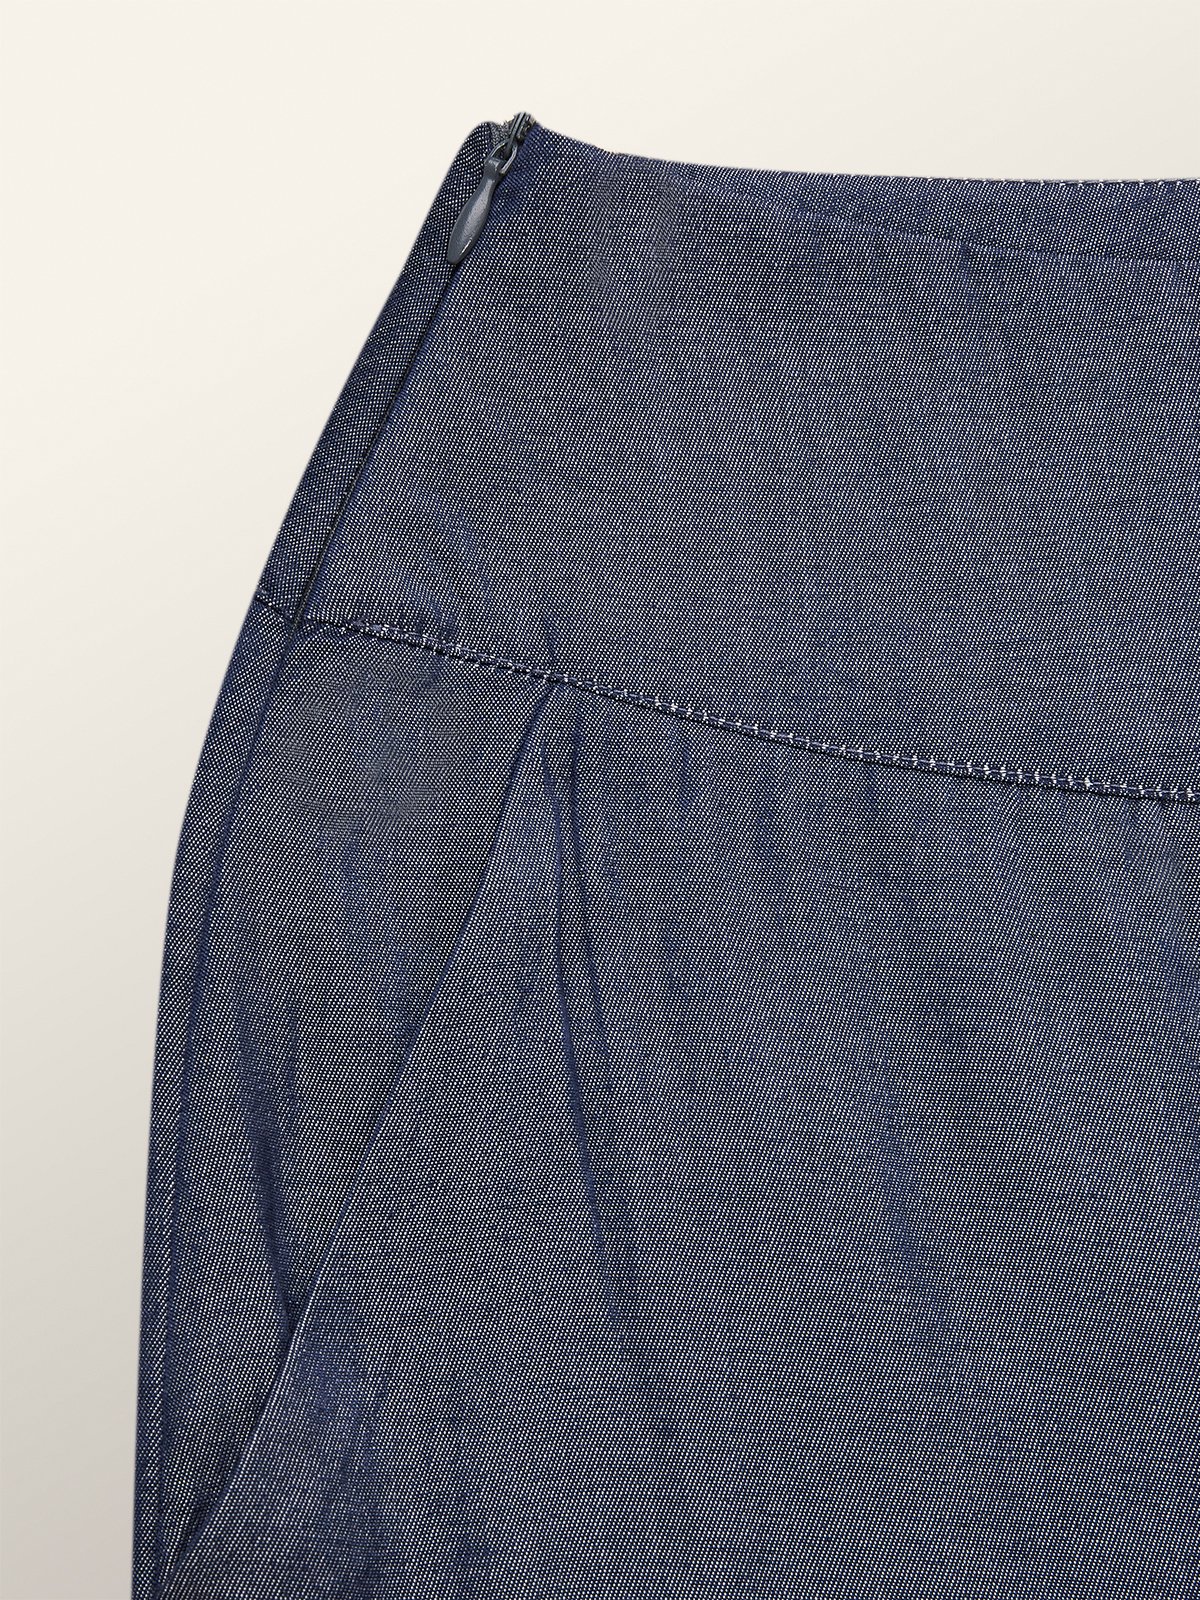 Unifarben Weit Denim-Imitation Urban Weitem Bein Jeans